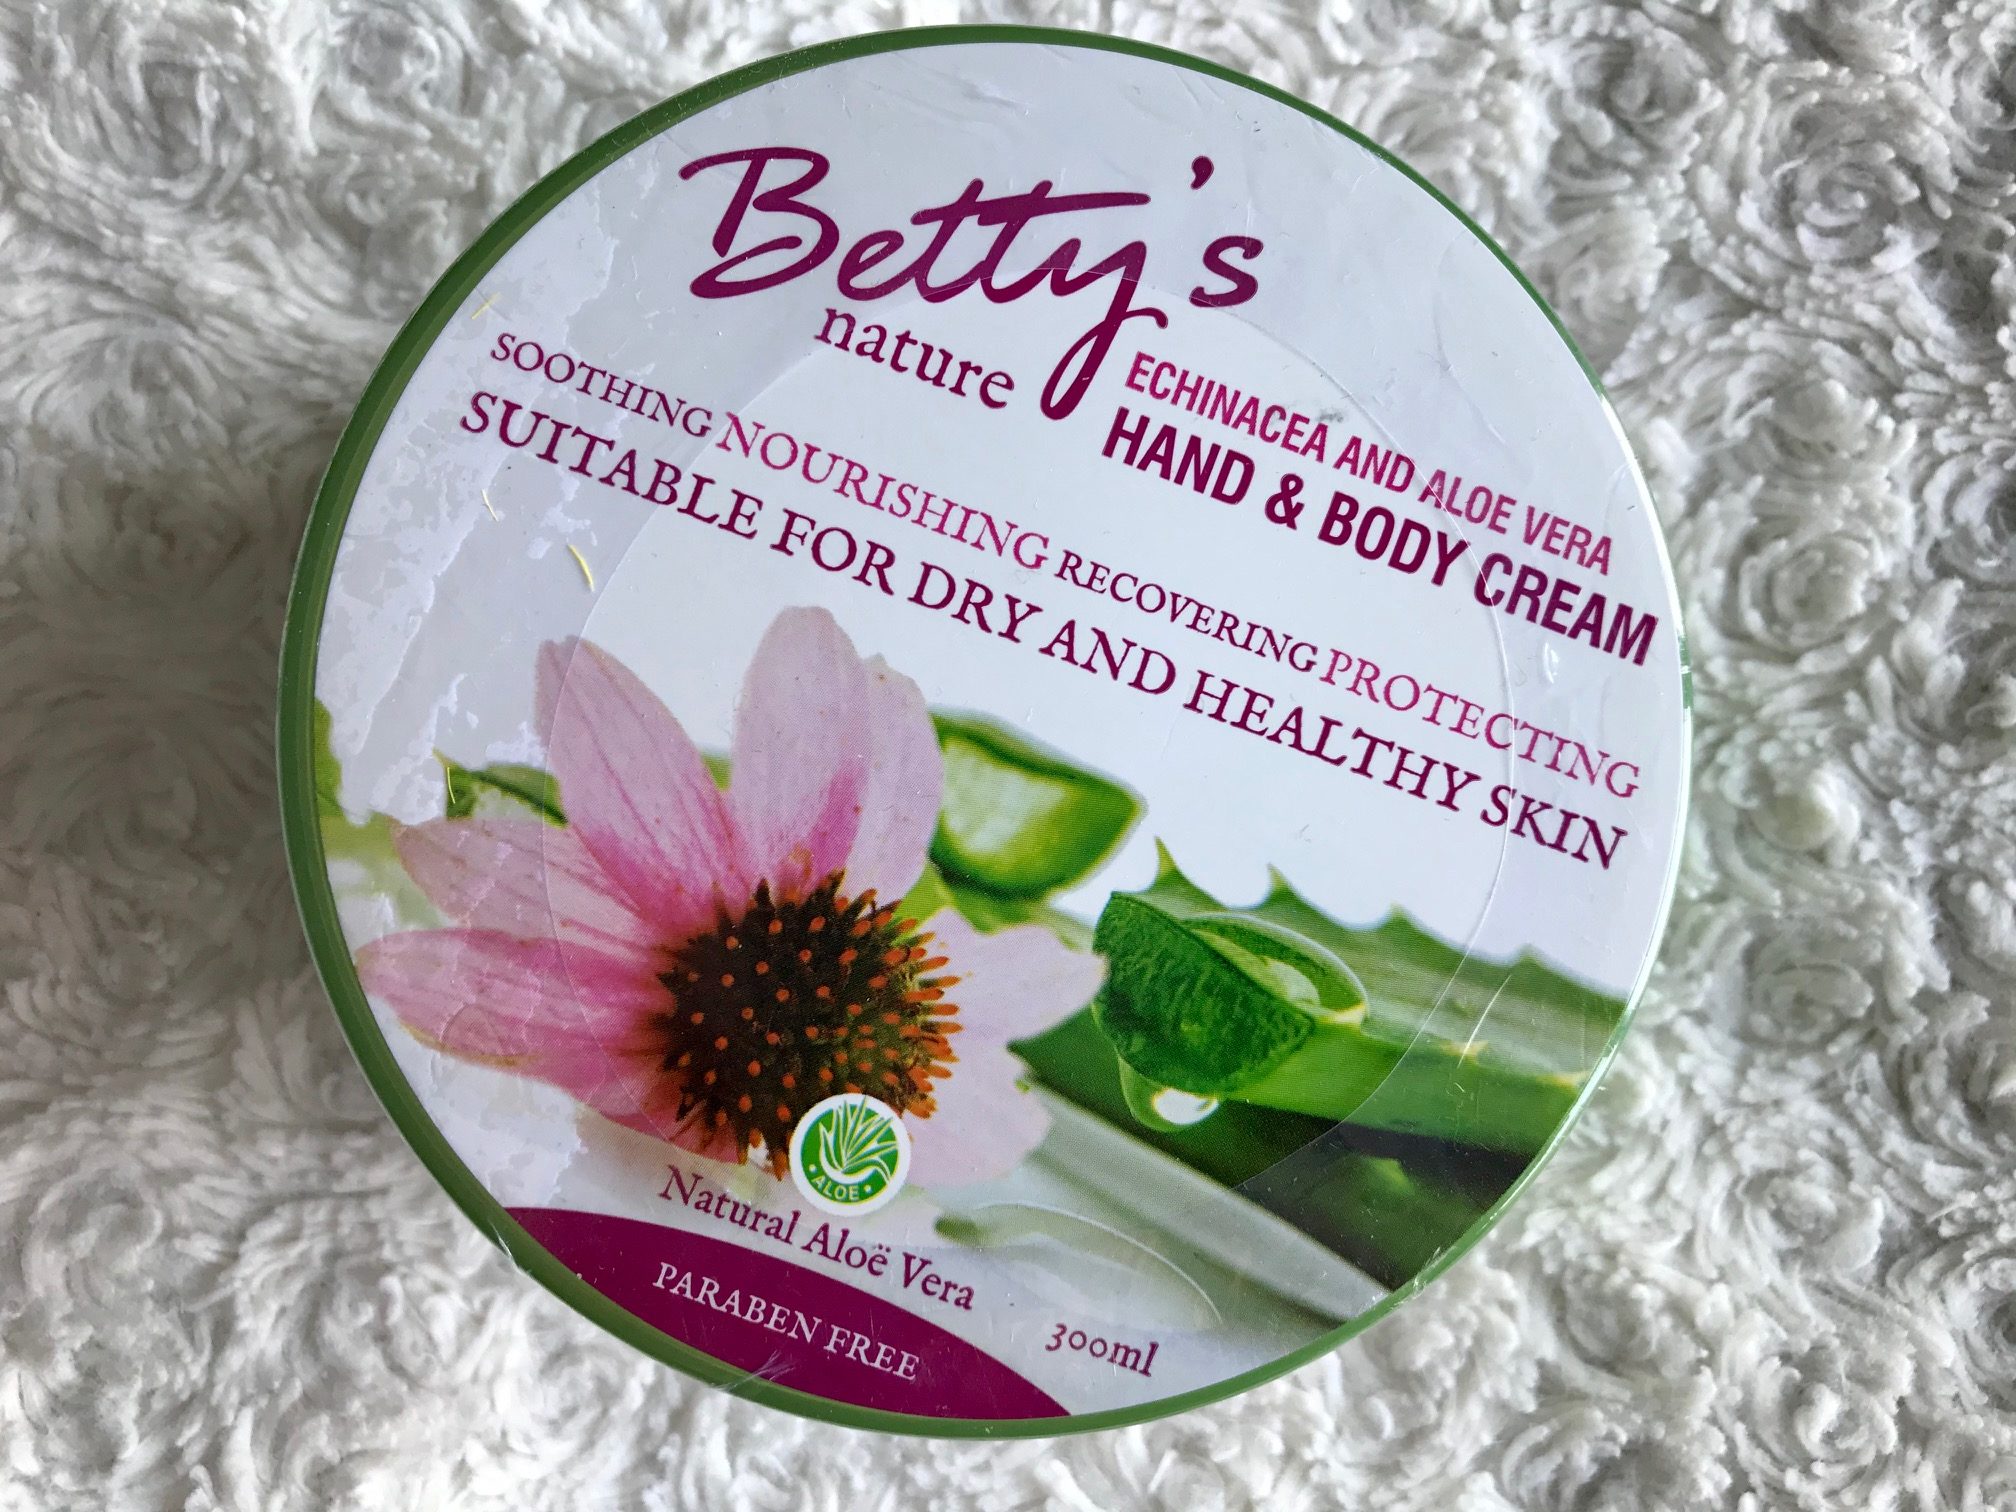 betty's nature hand & body cream